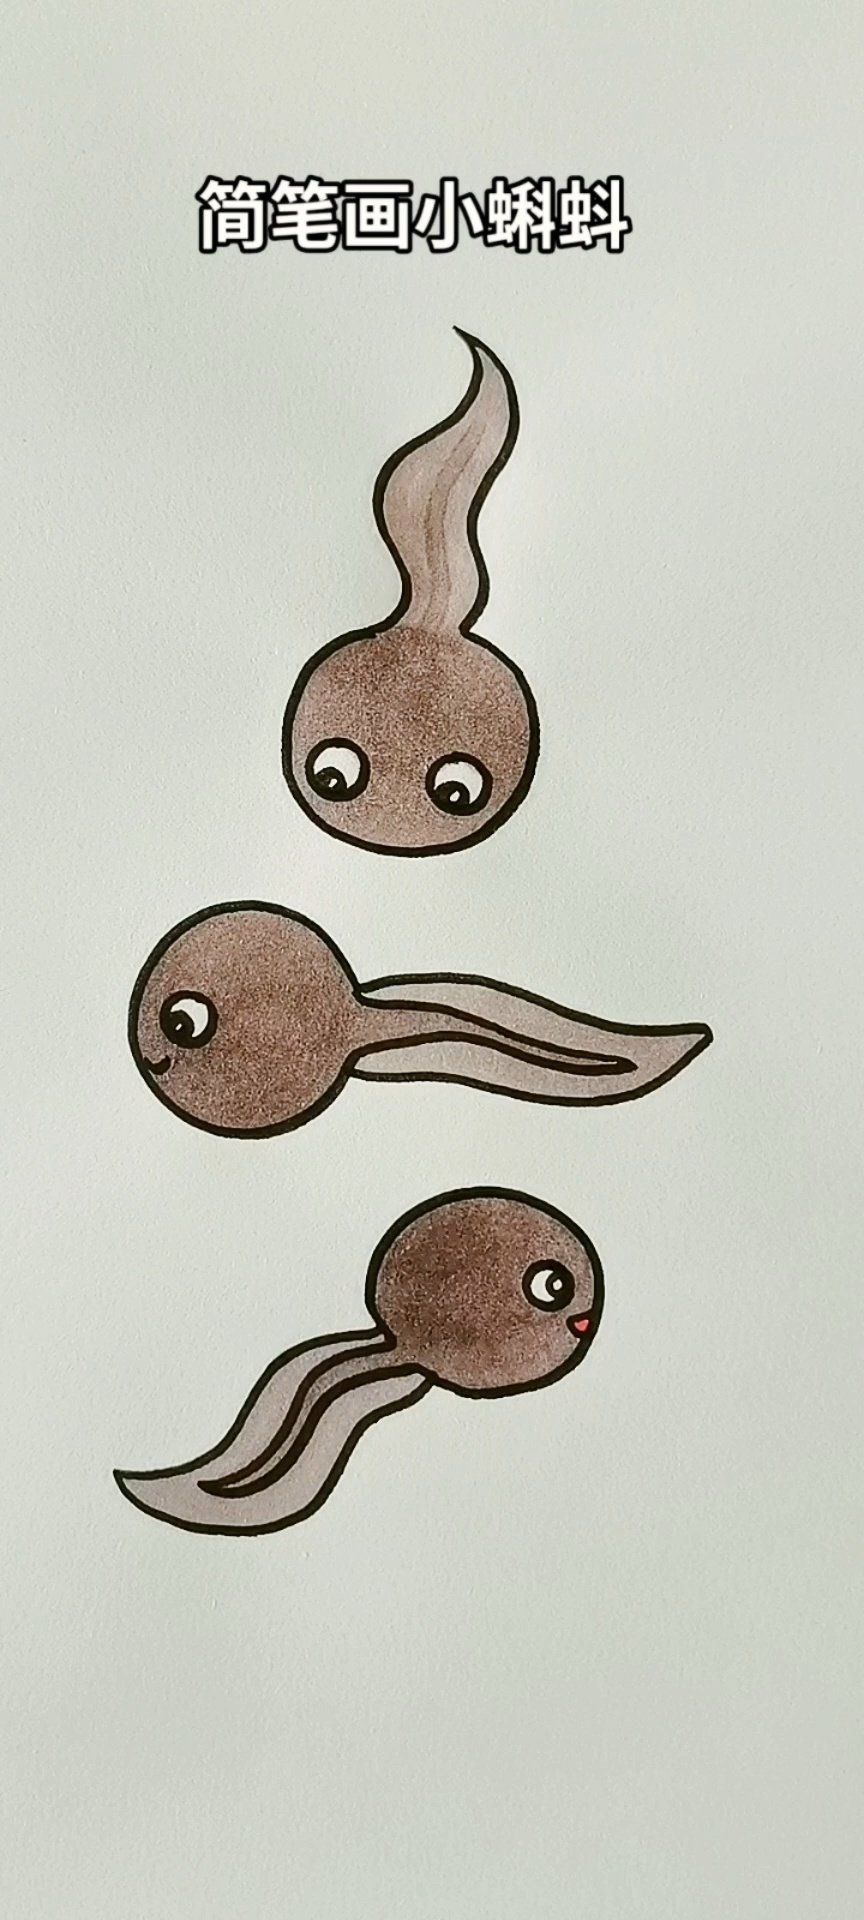 画小蝌蚪最简单的画法图片